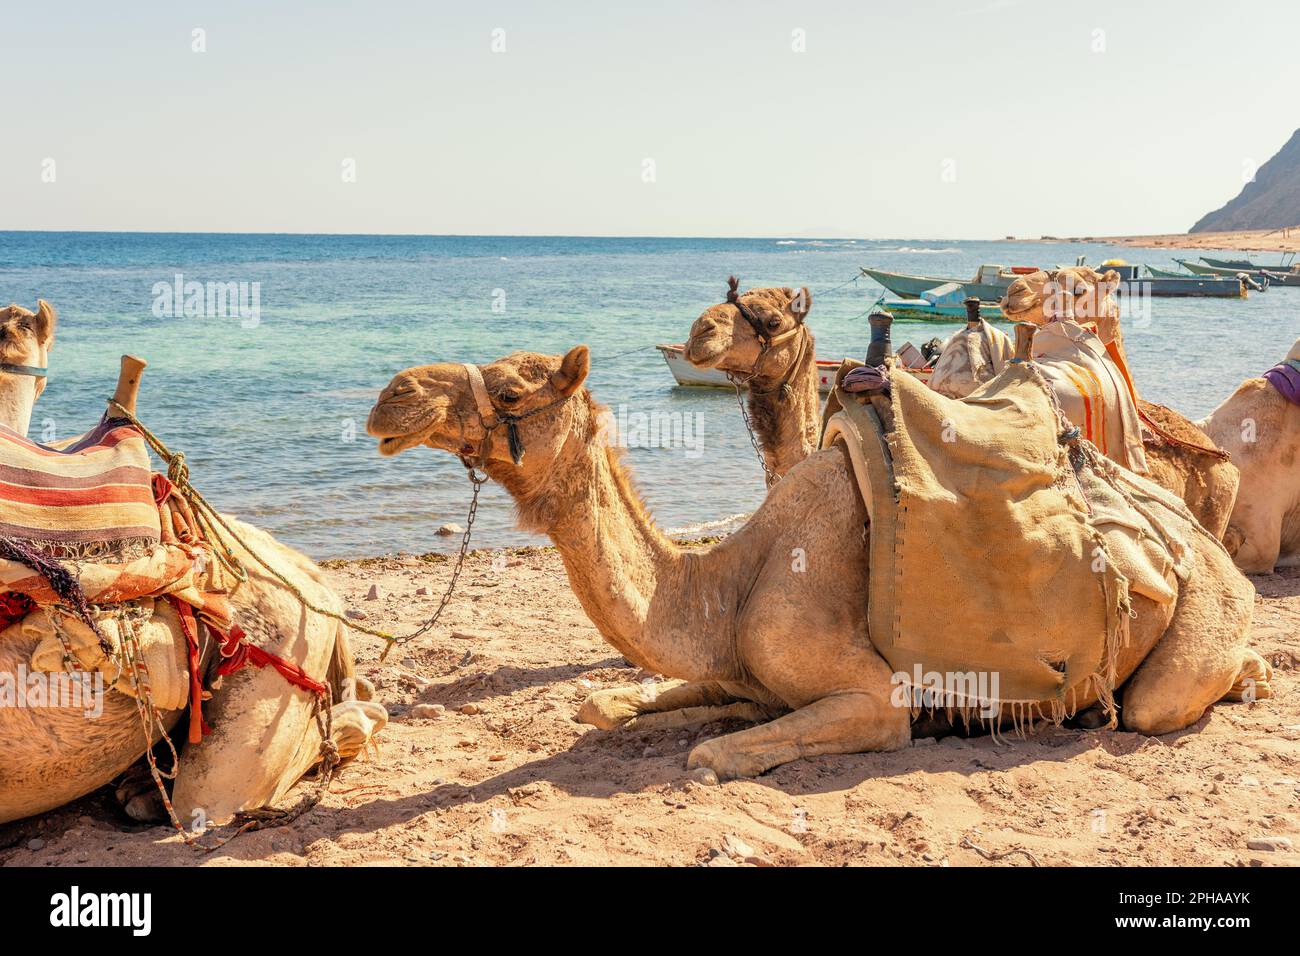 Chameaux sur les rives de la mer Rouge dans le golfe d'Aqaba. Dahab, Égypte. Banque D'Images